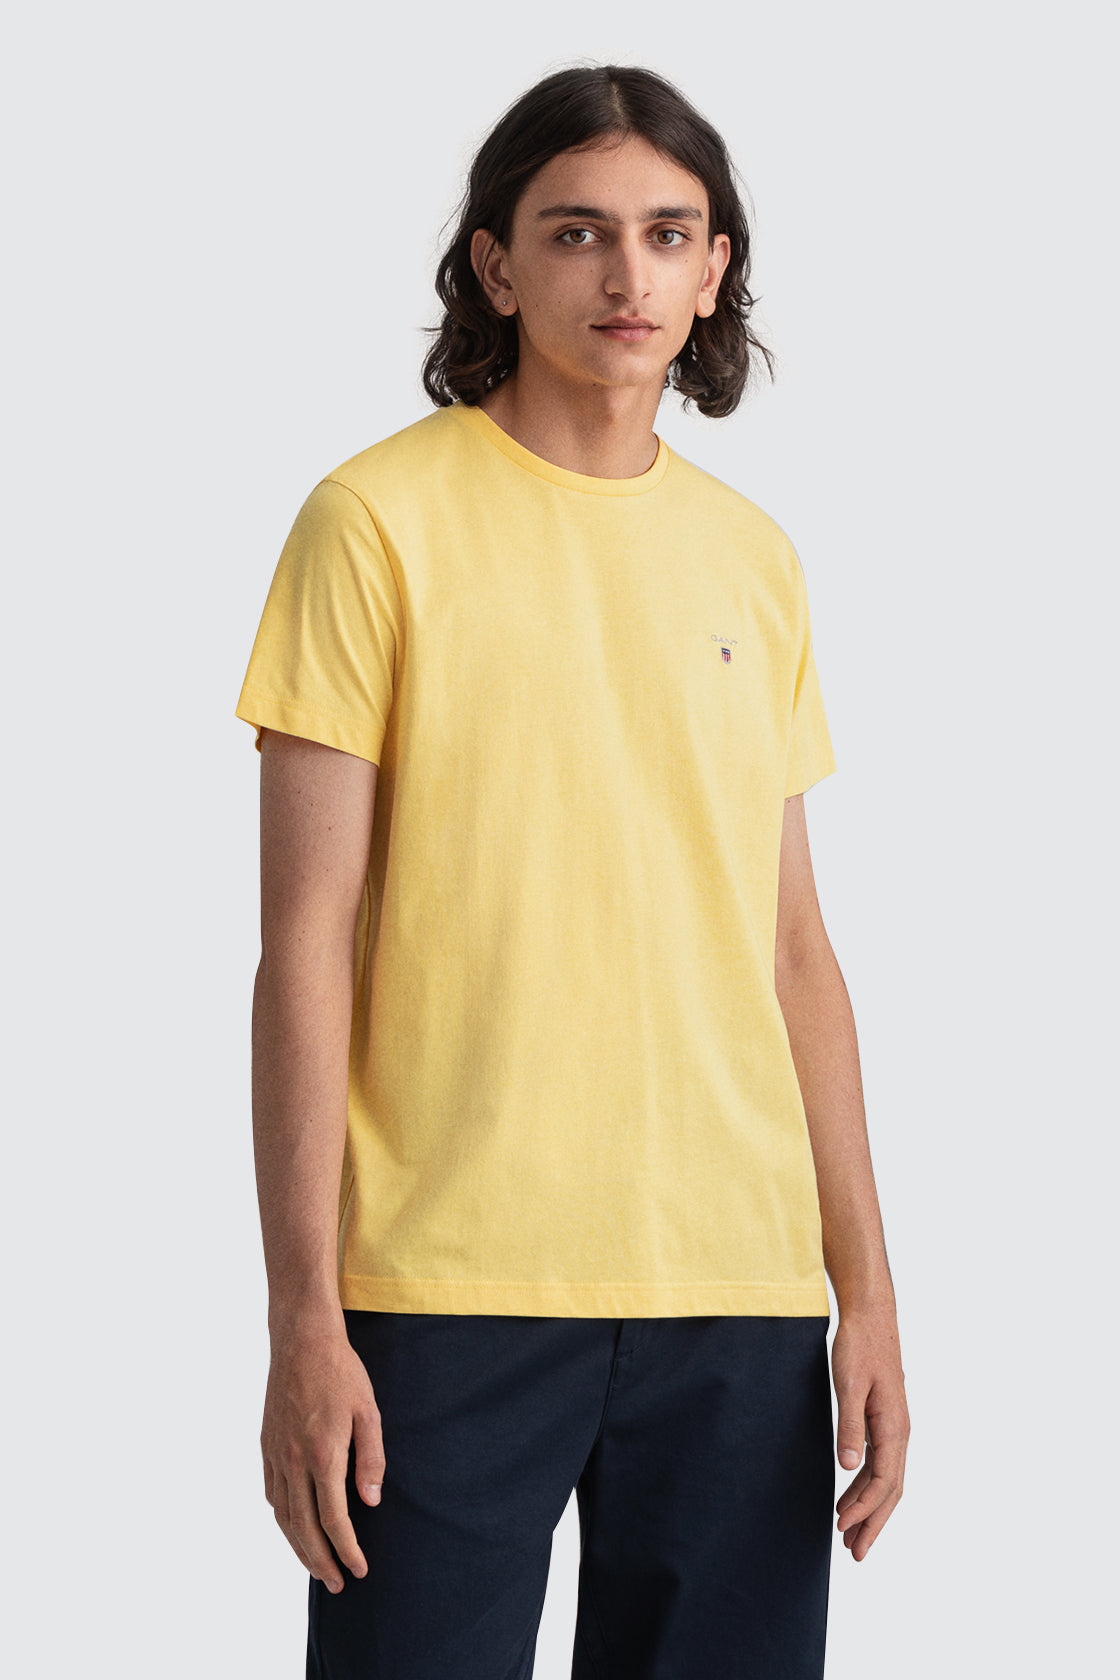 Gant Original Tee Shirt Banana Yellow